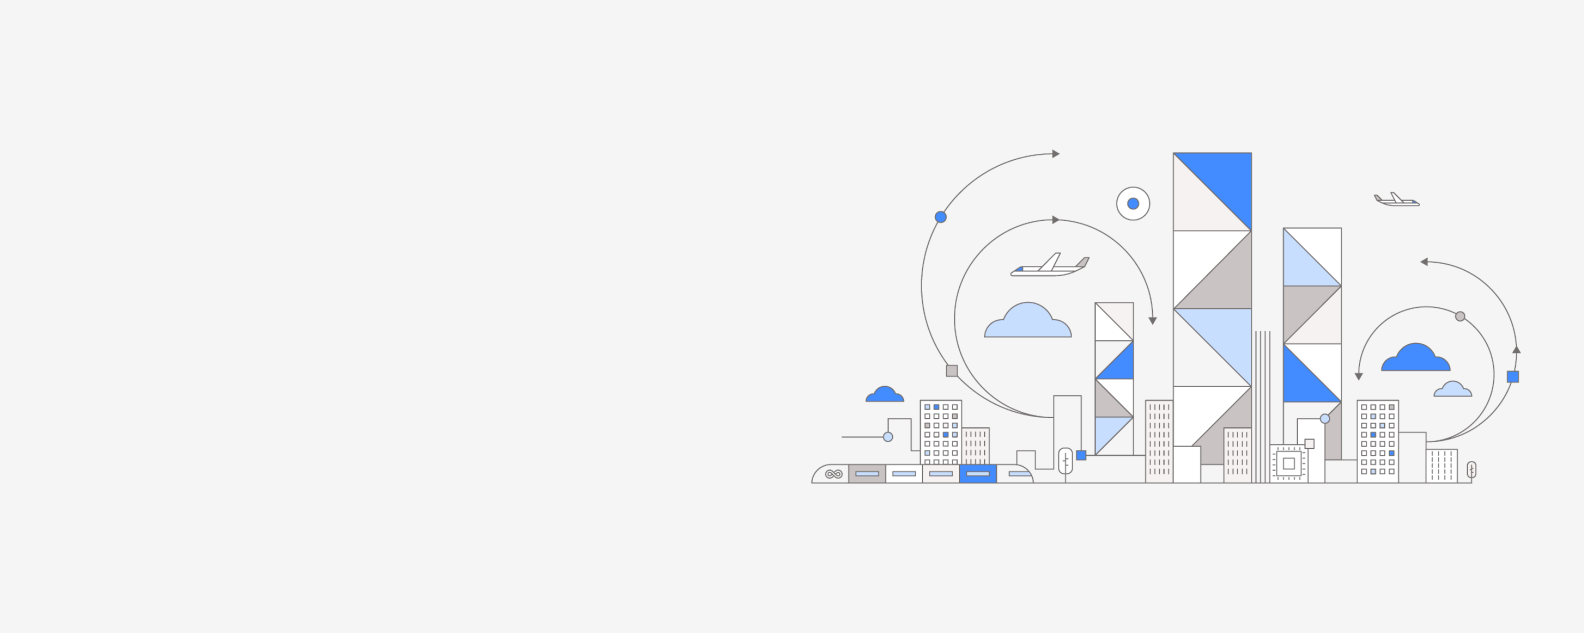 Ilustración plana de un horizonte urbano que muestra cómo la adopción de DevOps mejora la prestación de servicios en el cloud híbrido